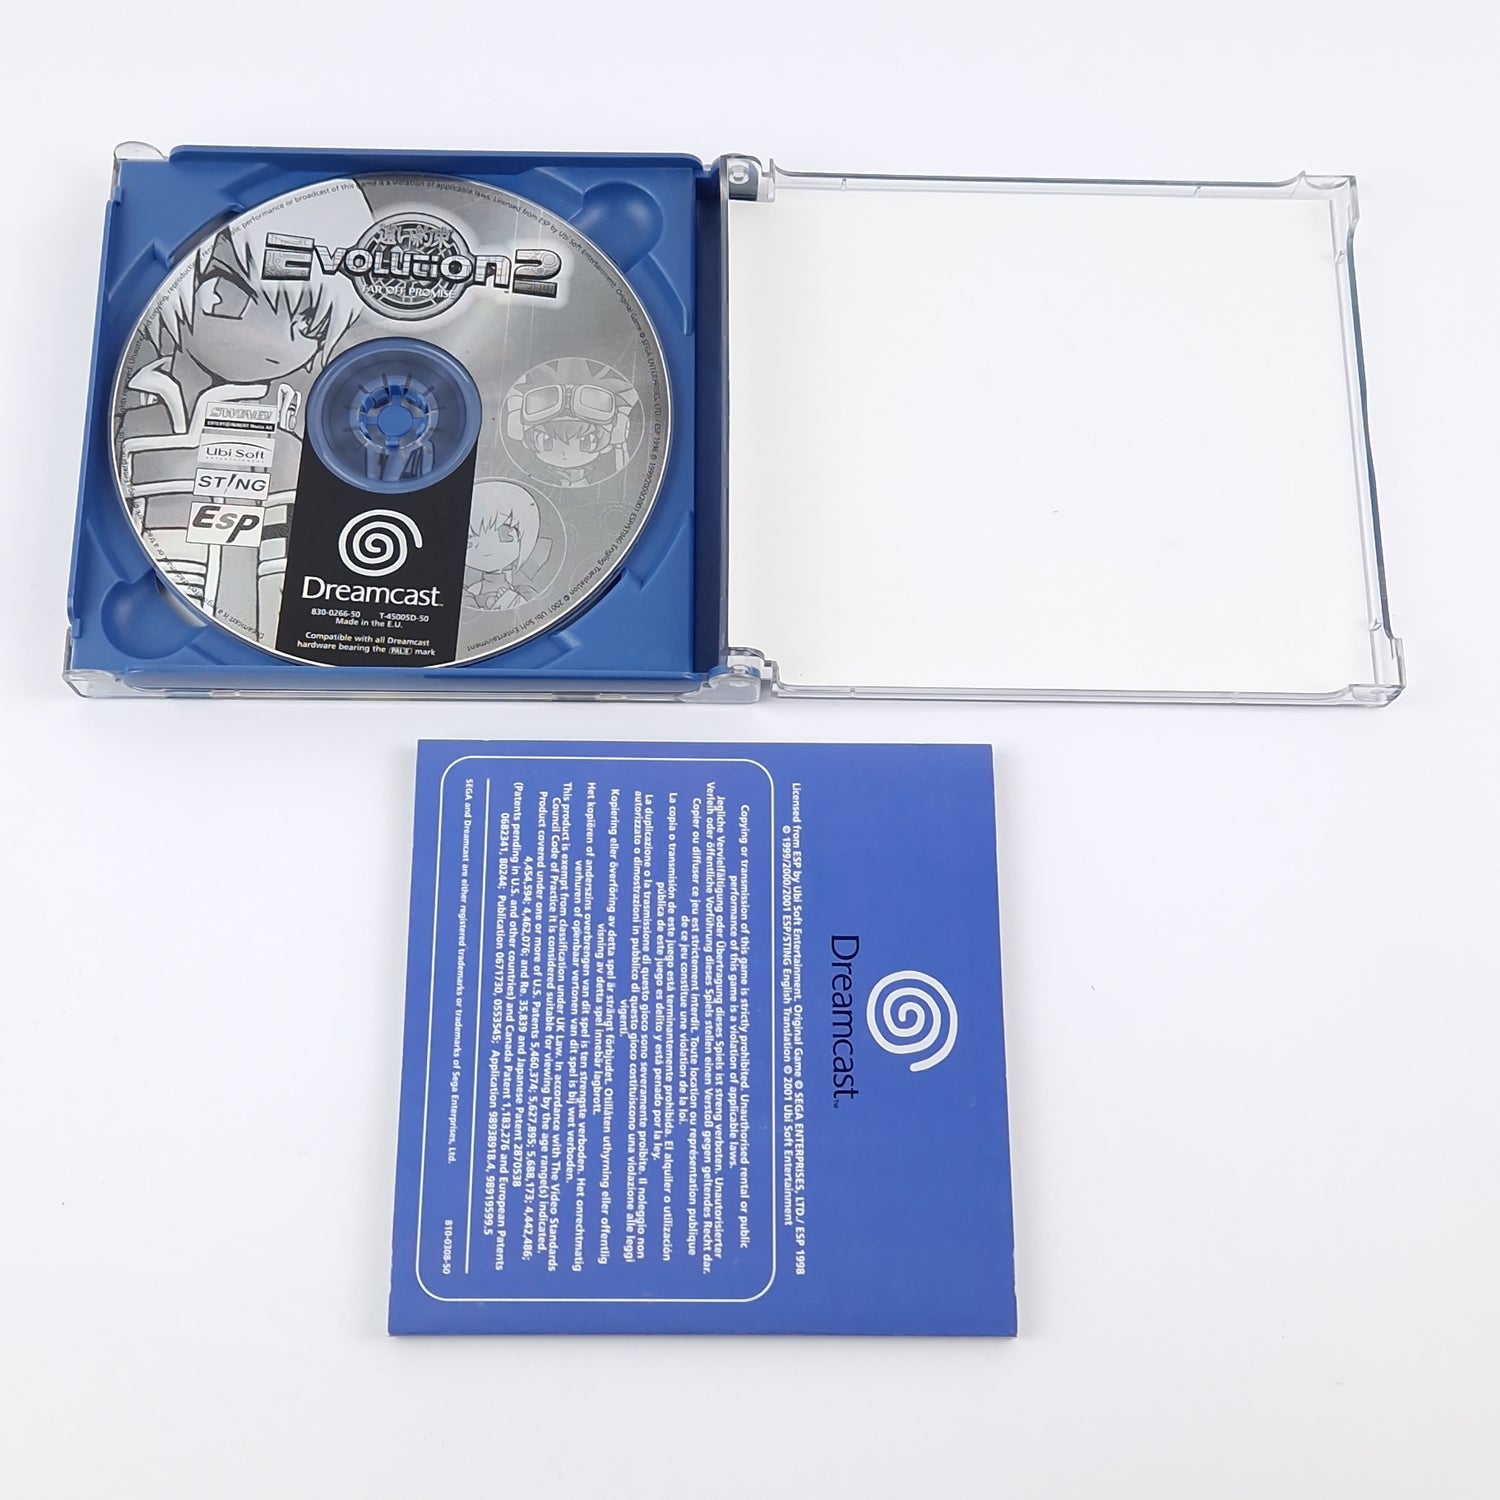 Sega Dreamcast Game: Evolution 2 Far Off Promise - OVP Instructions CD | DC PAL